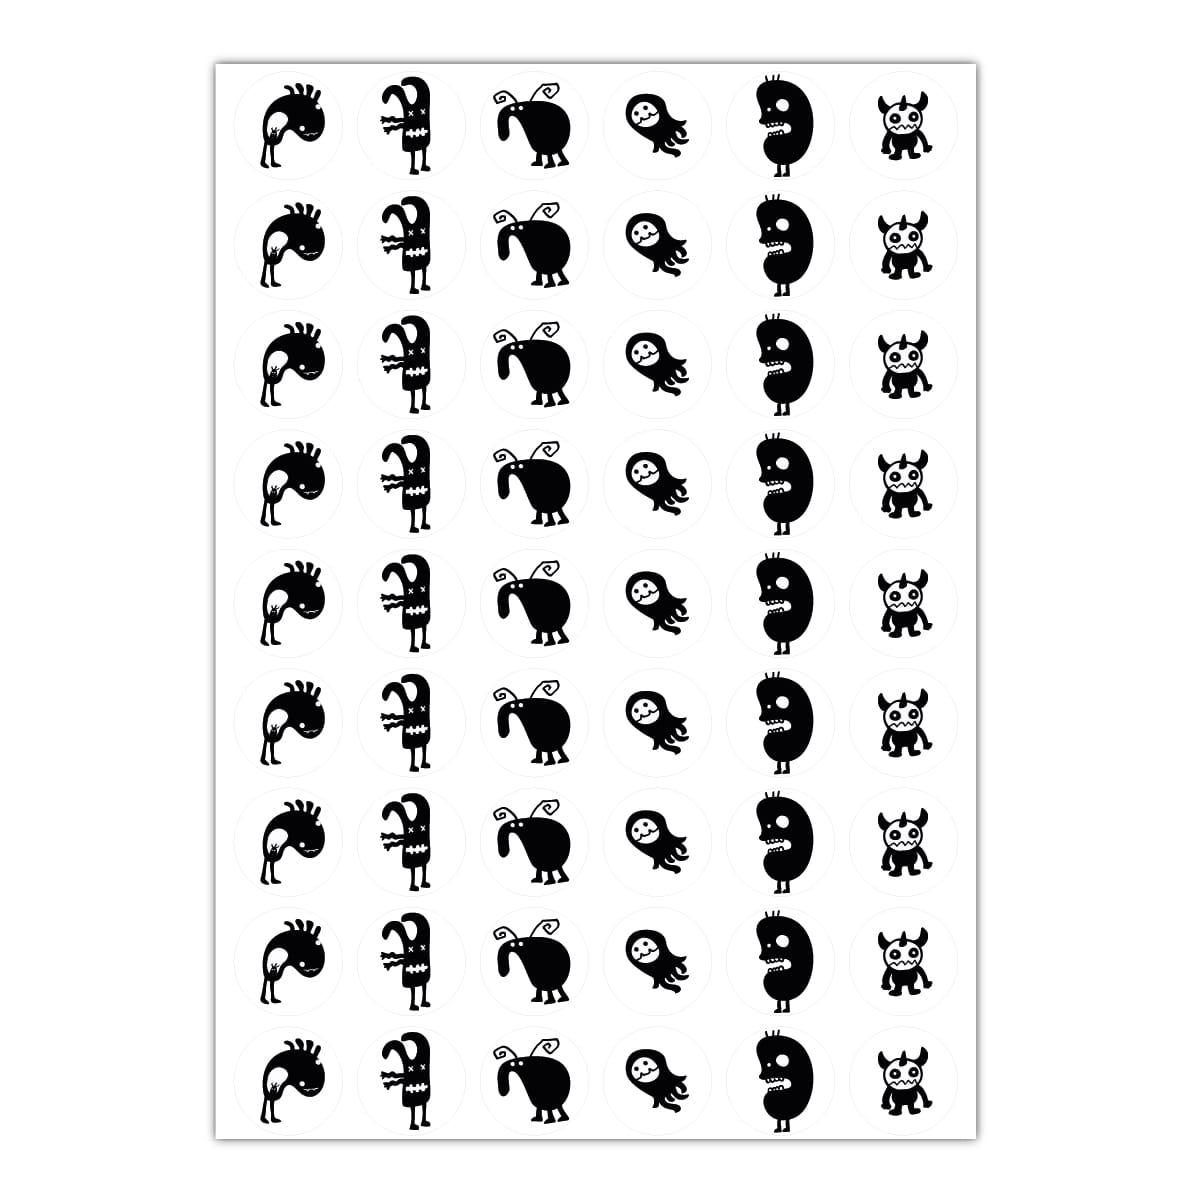 48 Coole Monster Aufkleber In Schwarz Weiss Mit 6 Gezeichneten Monstern Matte Papieraufkleber O 30mm 6 Motive Kartenkaufrausch De